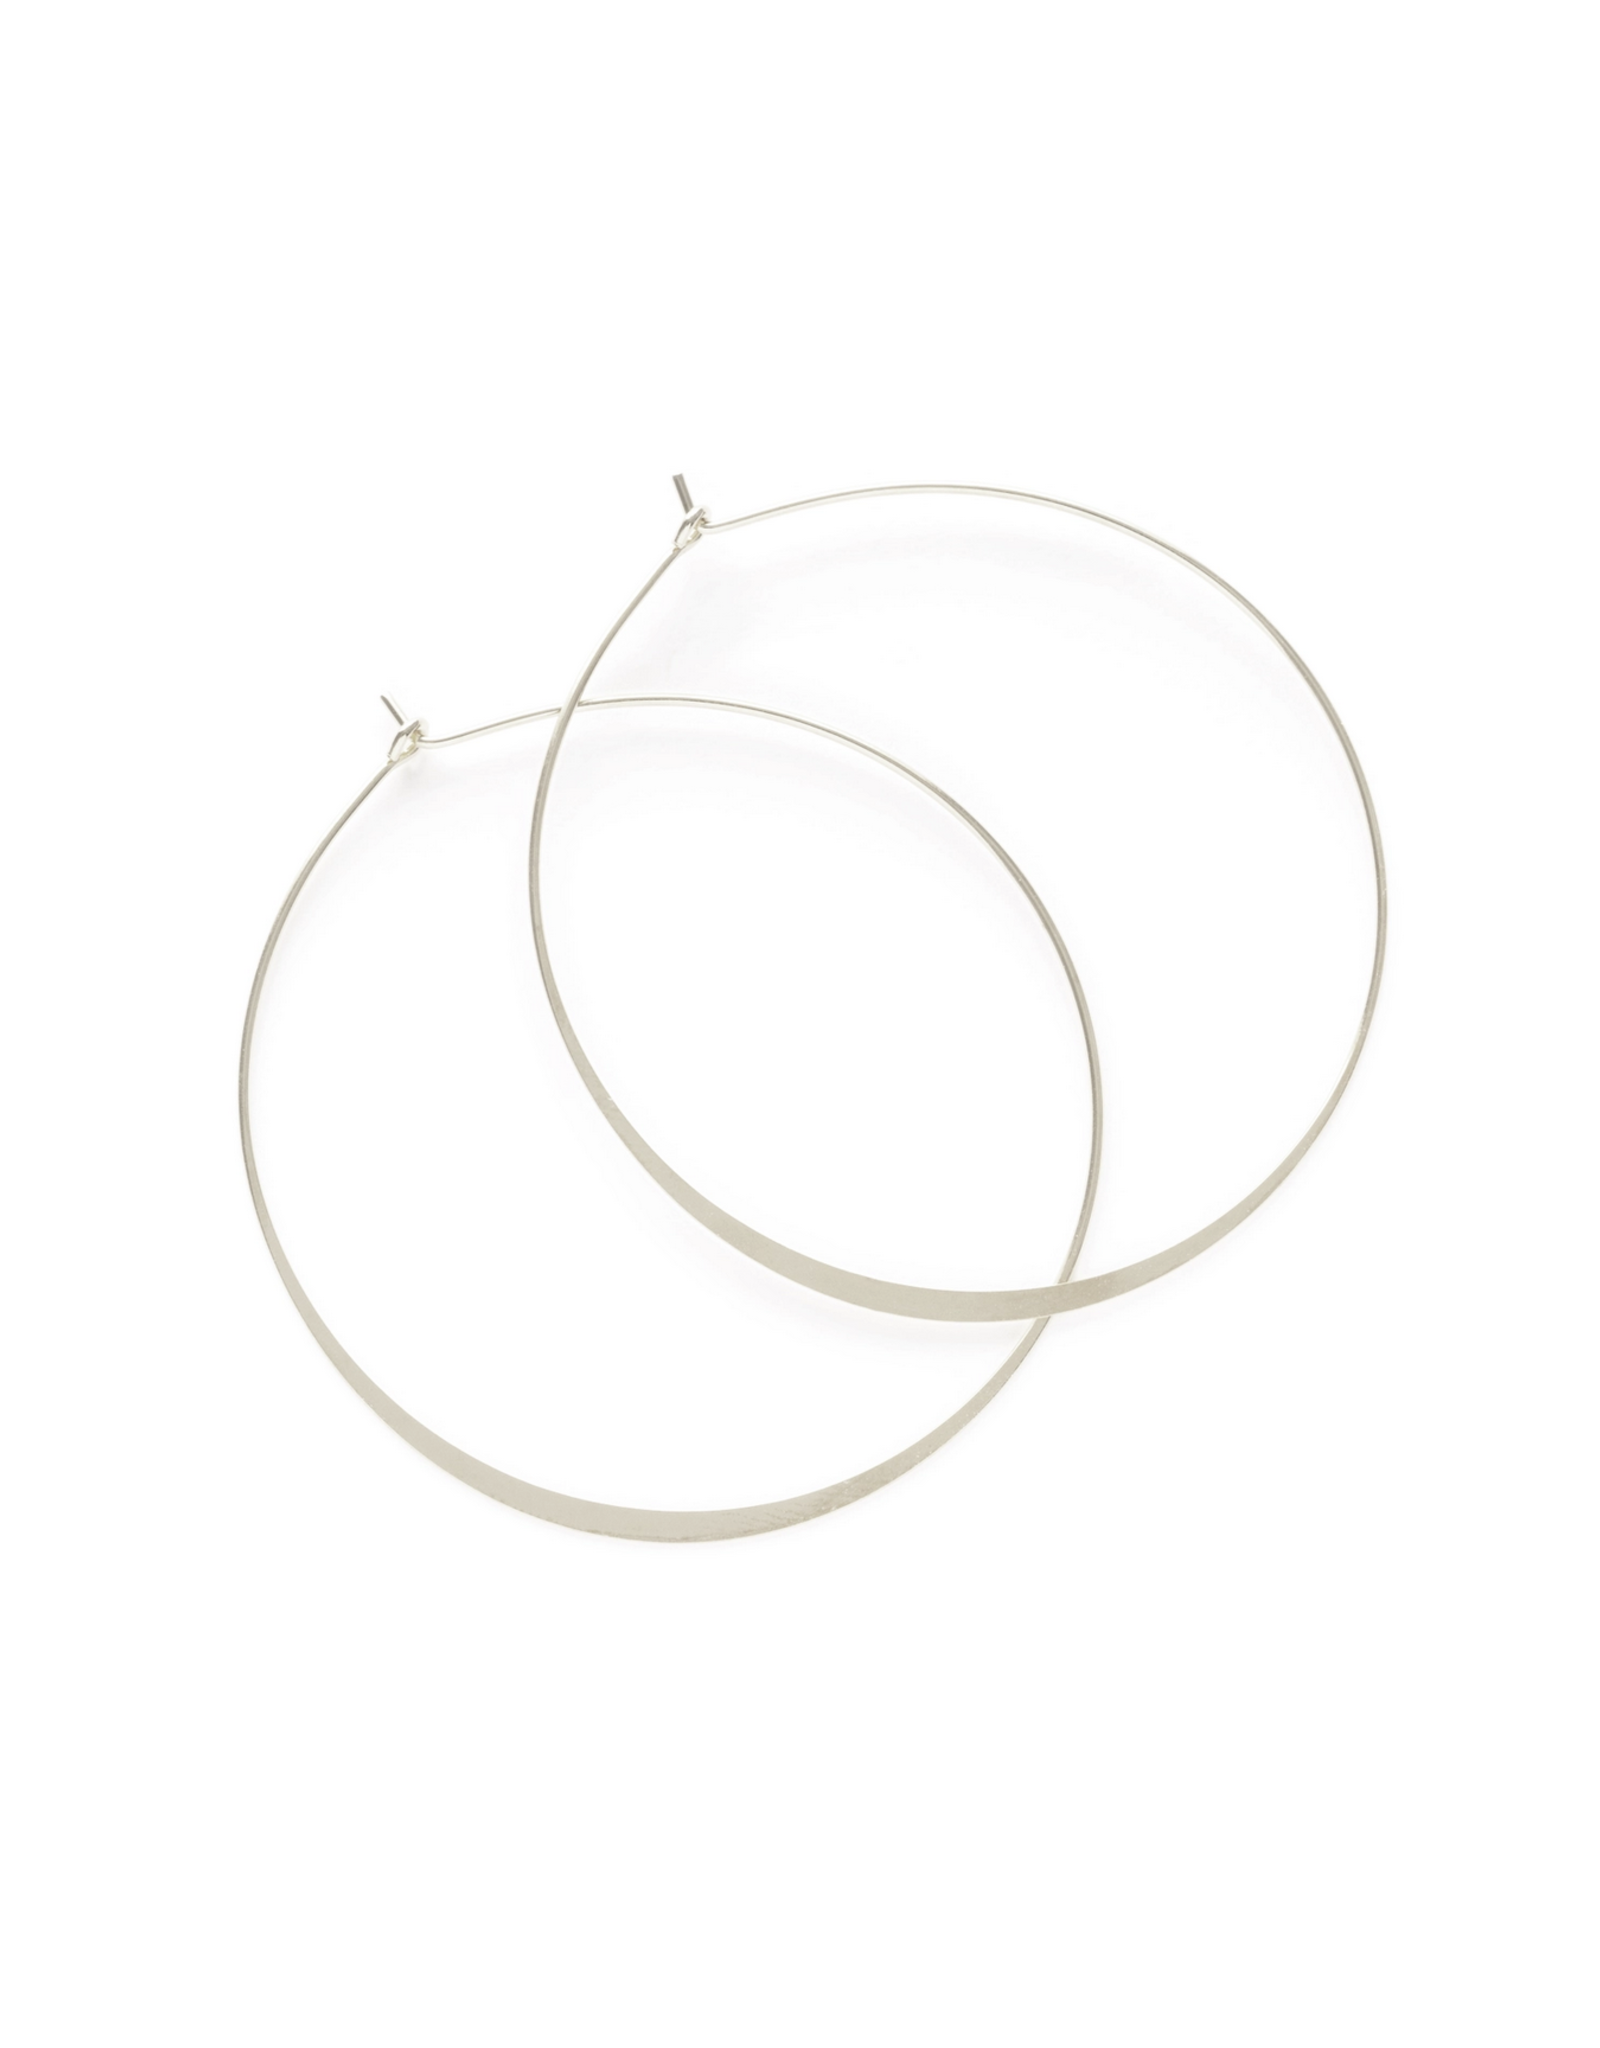 2" Round Hoop Earrings - Silver